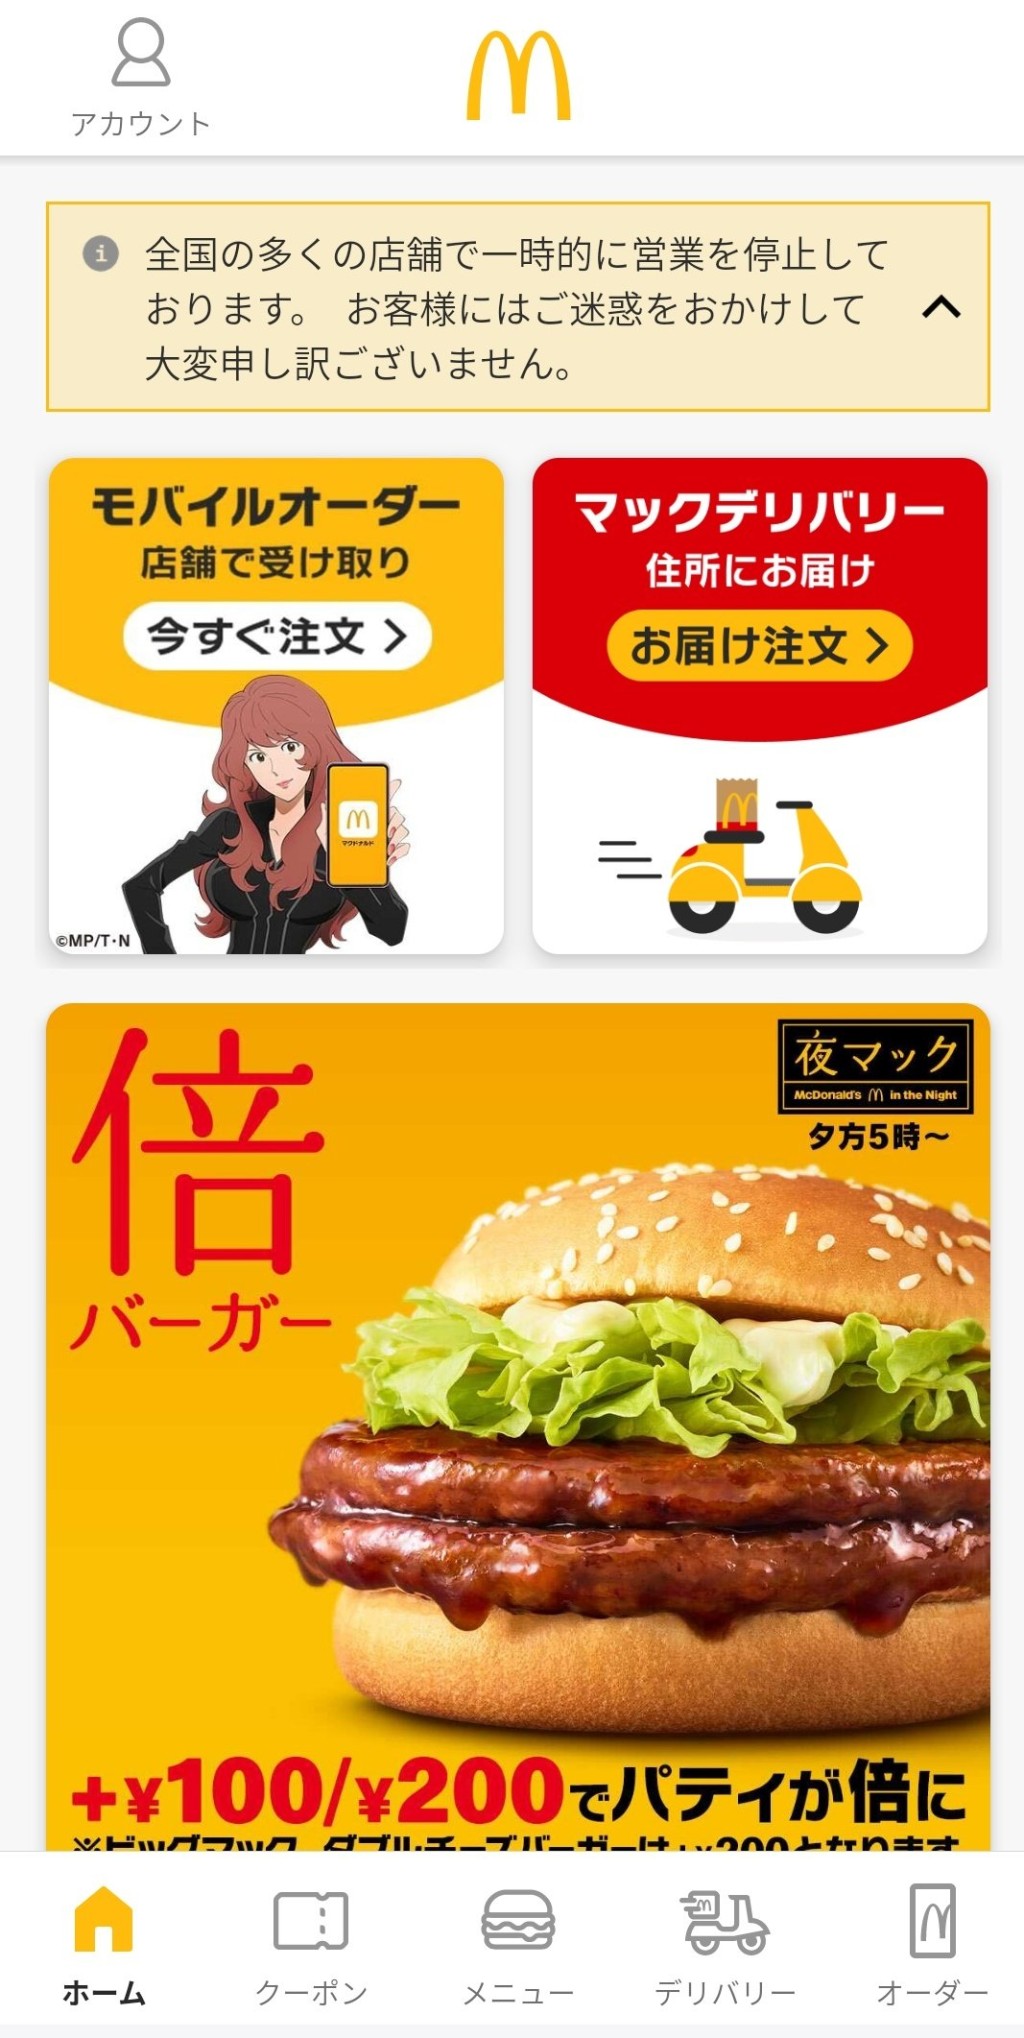 日本麦当劳手机程式「全国多店暂停营业」通告置顶。